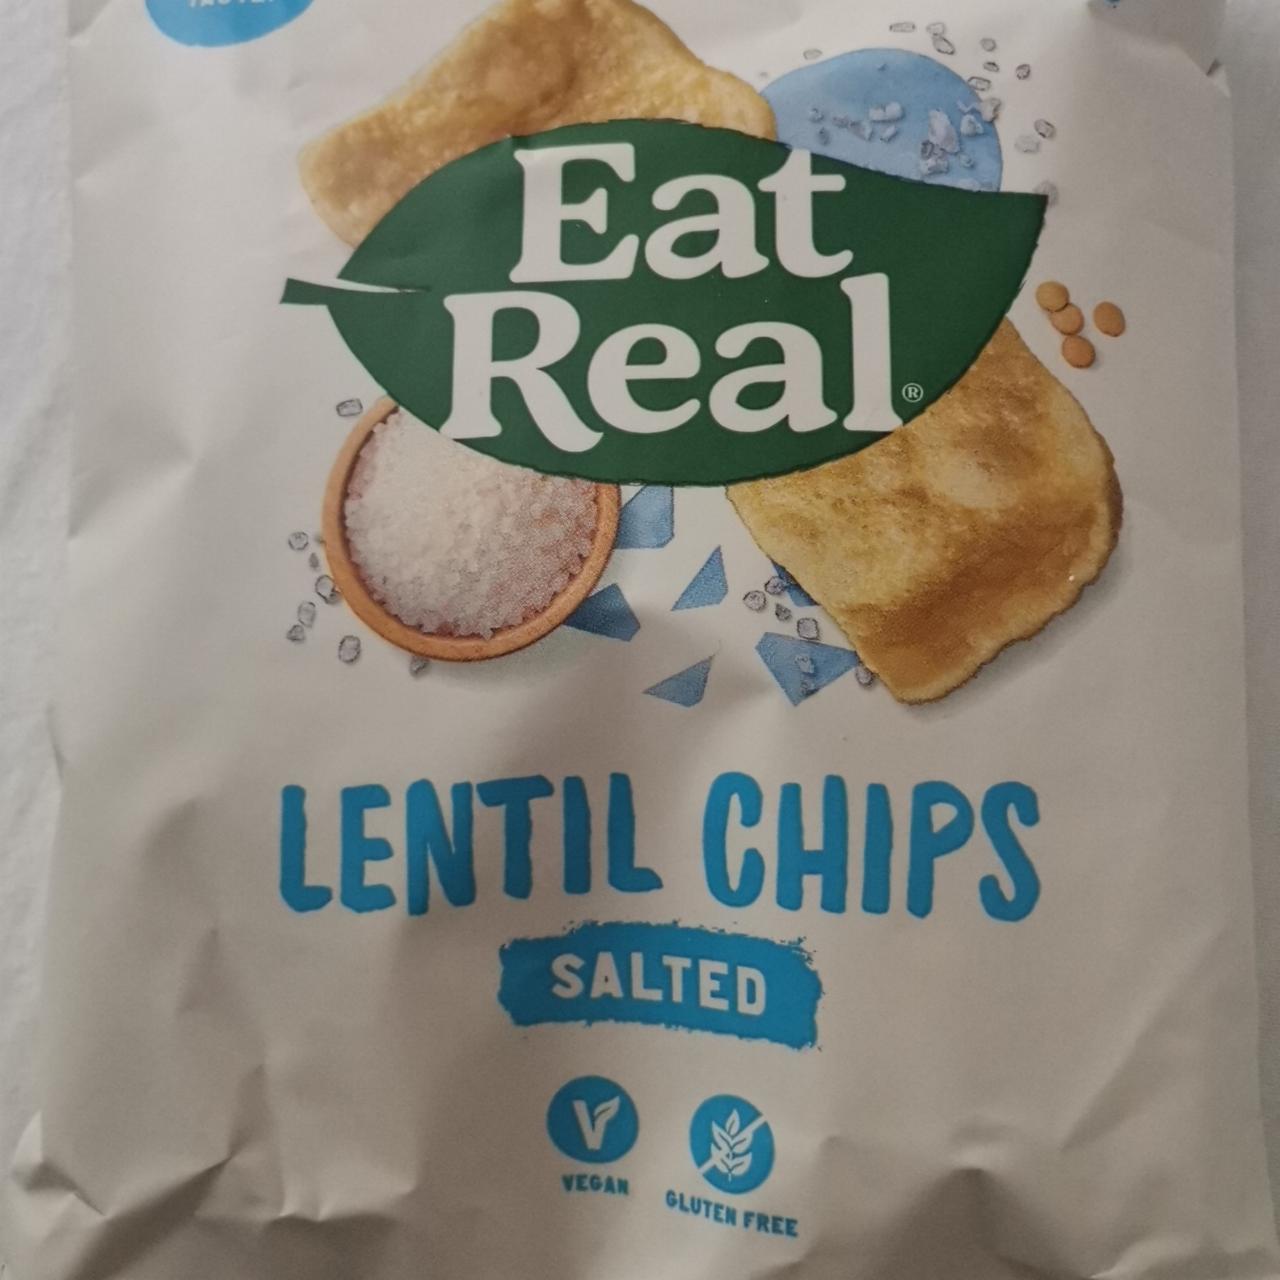 Fotografie - Lentil chips Salted Eat Real